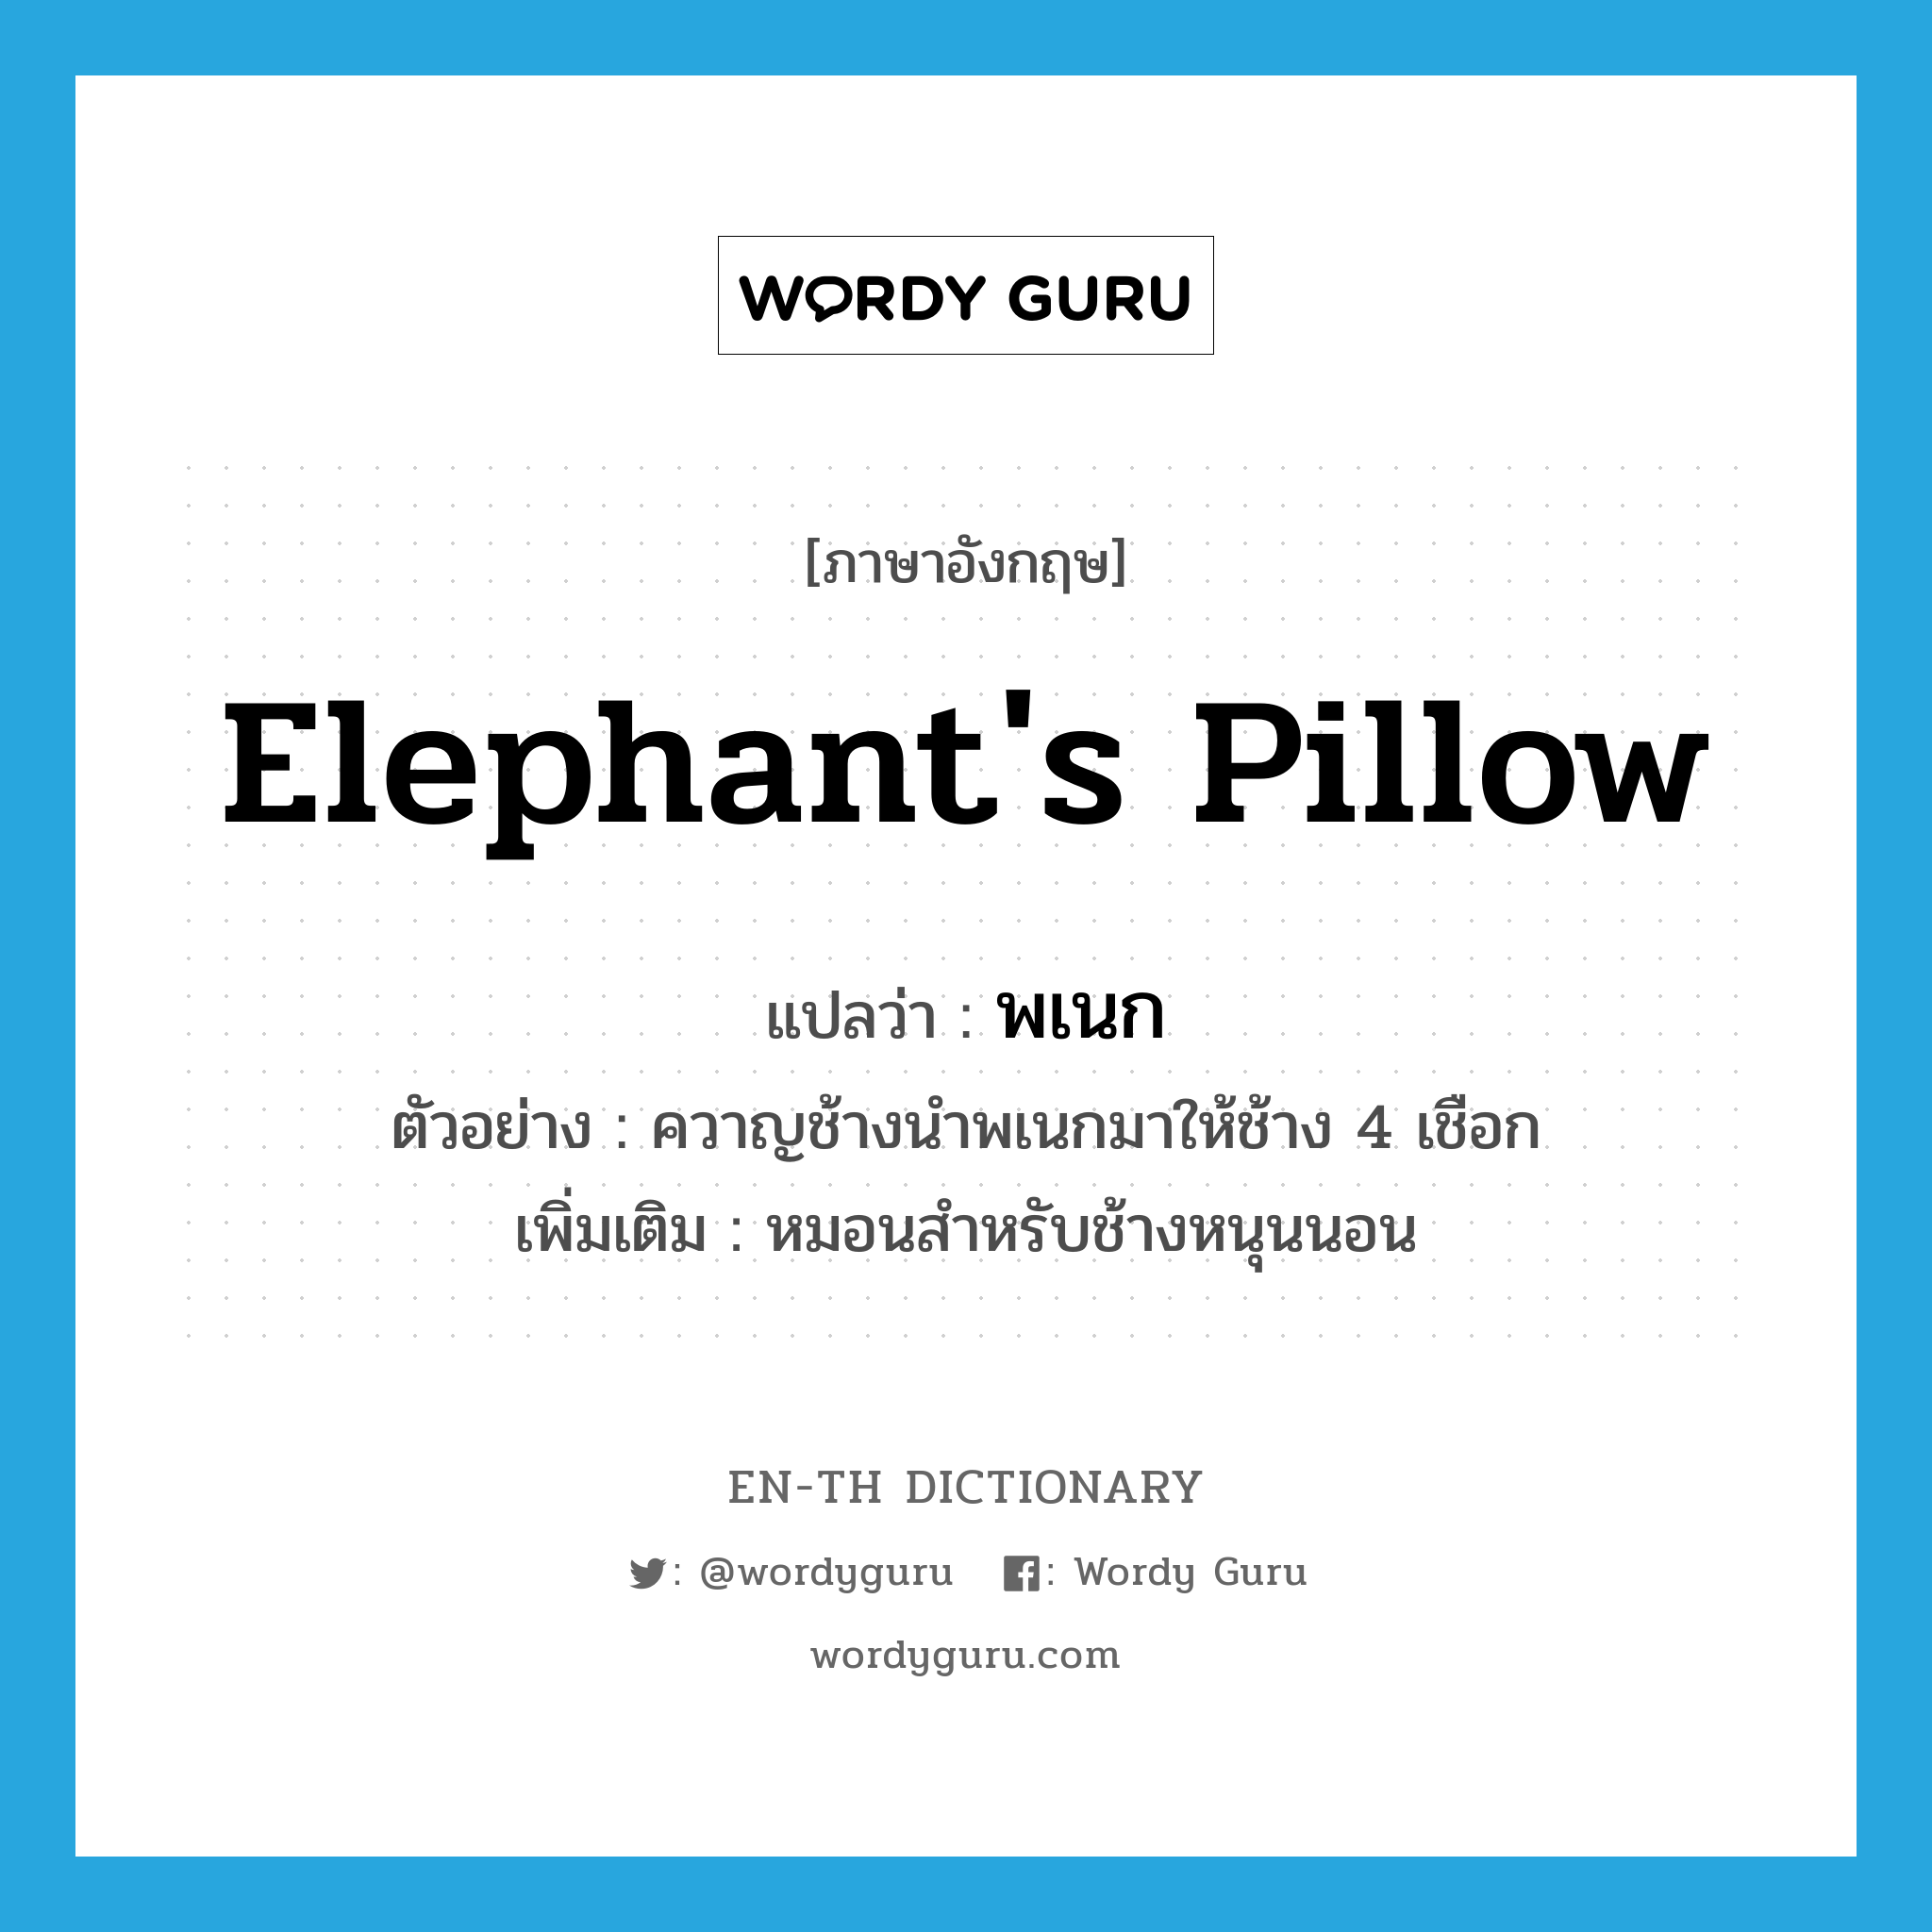 elephant's pillow แปลว่า?, คำศัพท์ภาษาอังกฤษ elephant's pillow แปลว่า พเนก ประเภท N ตัวอย่าง ควาญช้างนำพเนกมาให้ช้าง 4 เชือก เพิ่มเติม หมอนสำหรับช้างหนุนนอน หมวด N